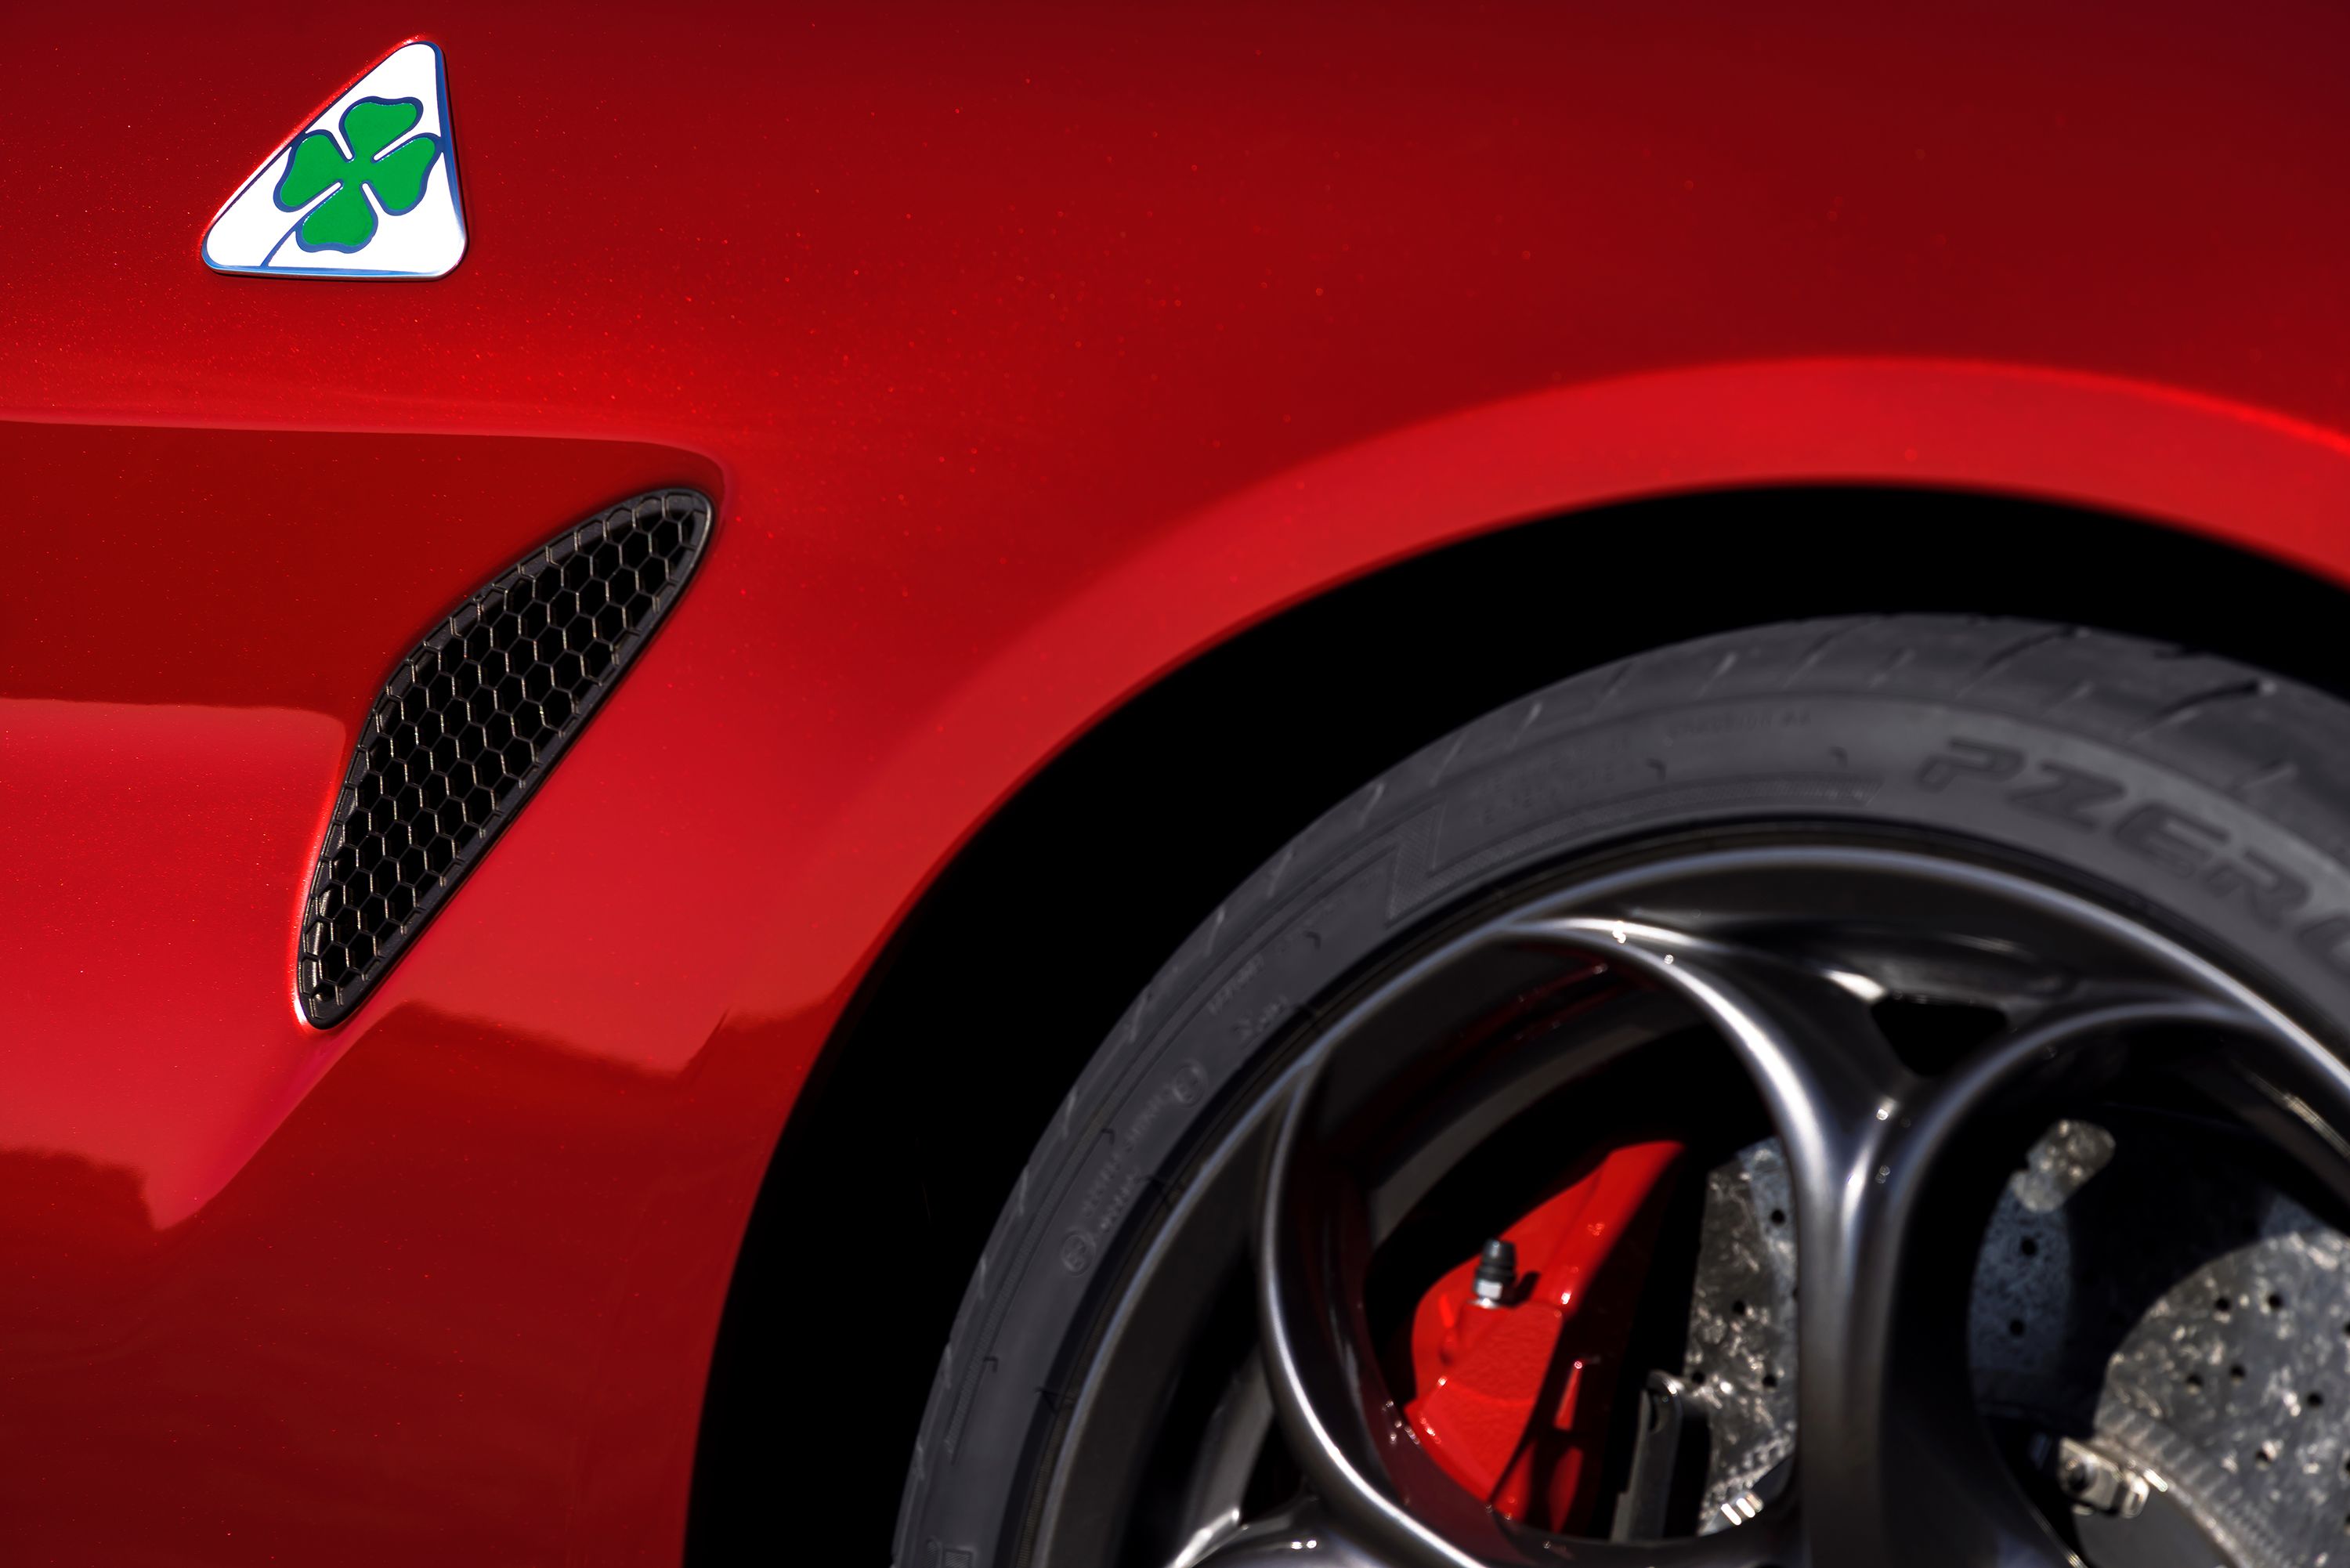 2019 - 2020  I Configured the 2019 Alfa Romeo Giulia Quadrifoglio NRing Edition and Saved 9 Grand